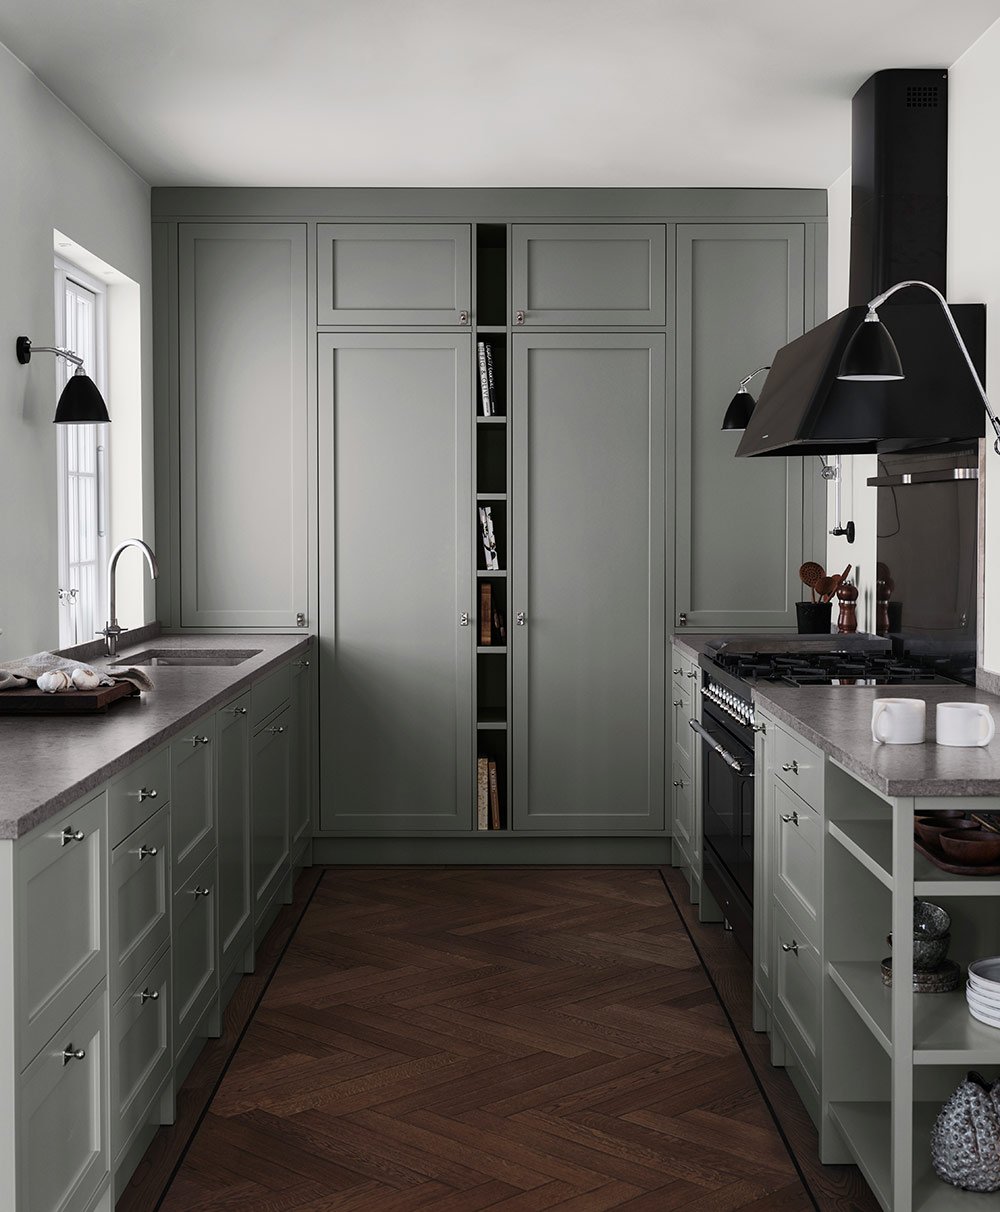 Bespoke shaker kitchens in timeless design — Nordiska Kök